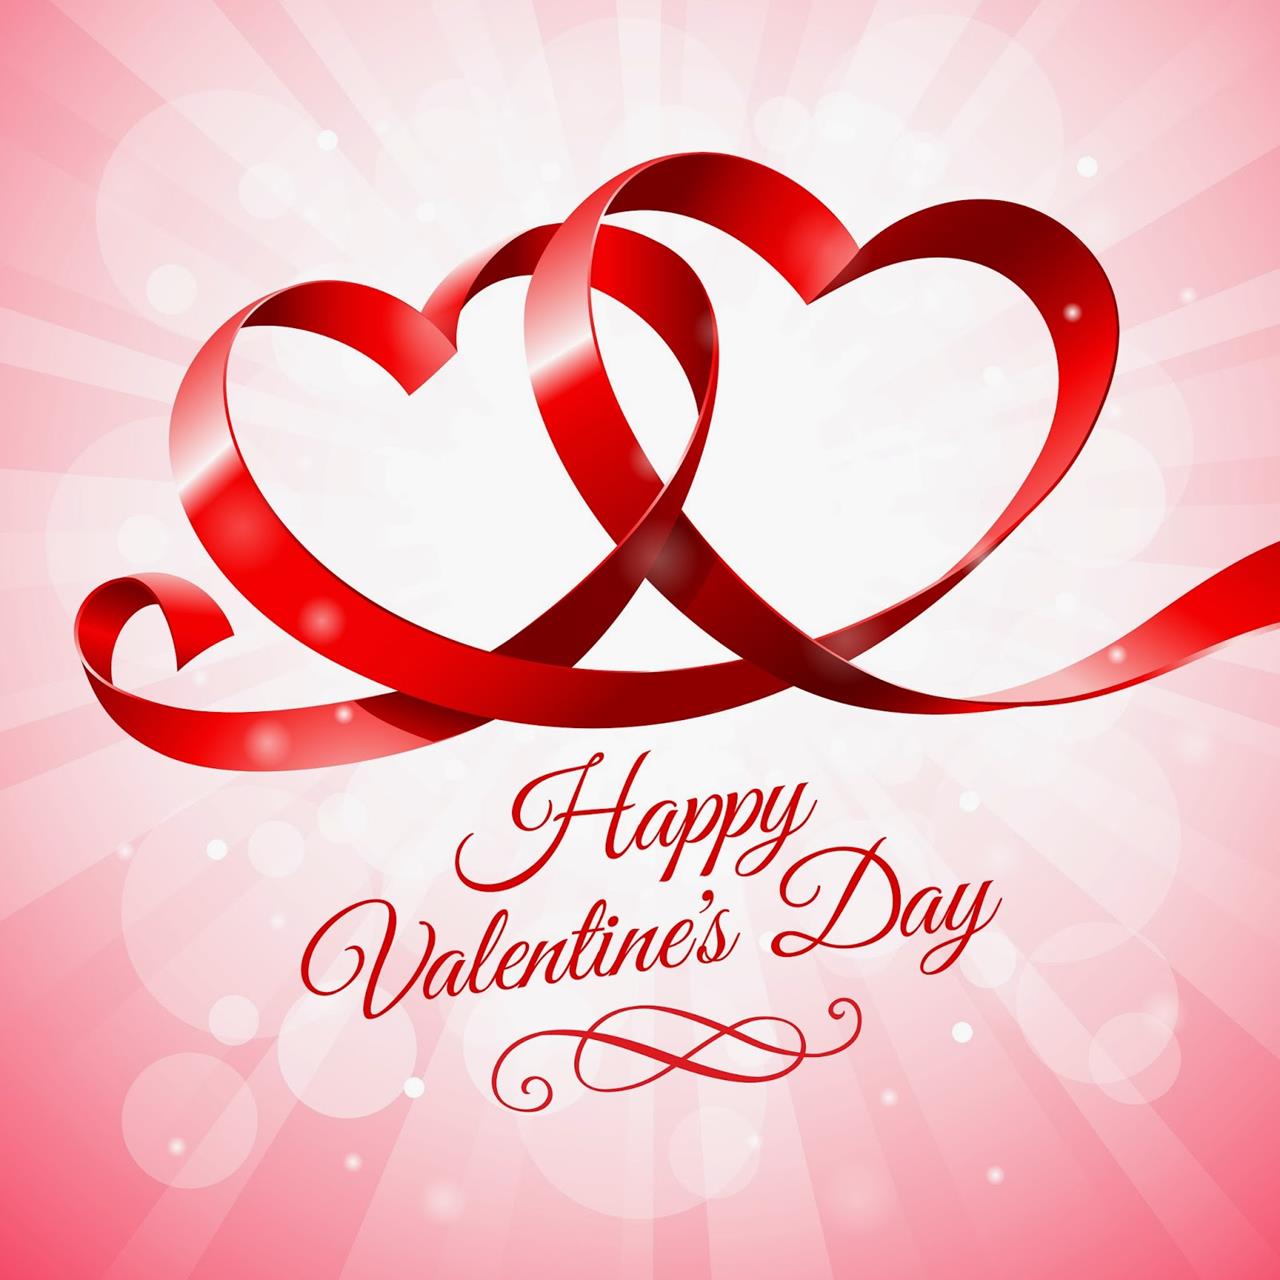 14 februar valentinstag tapete,herz,text,liebe,rot,valentinstag